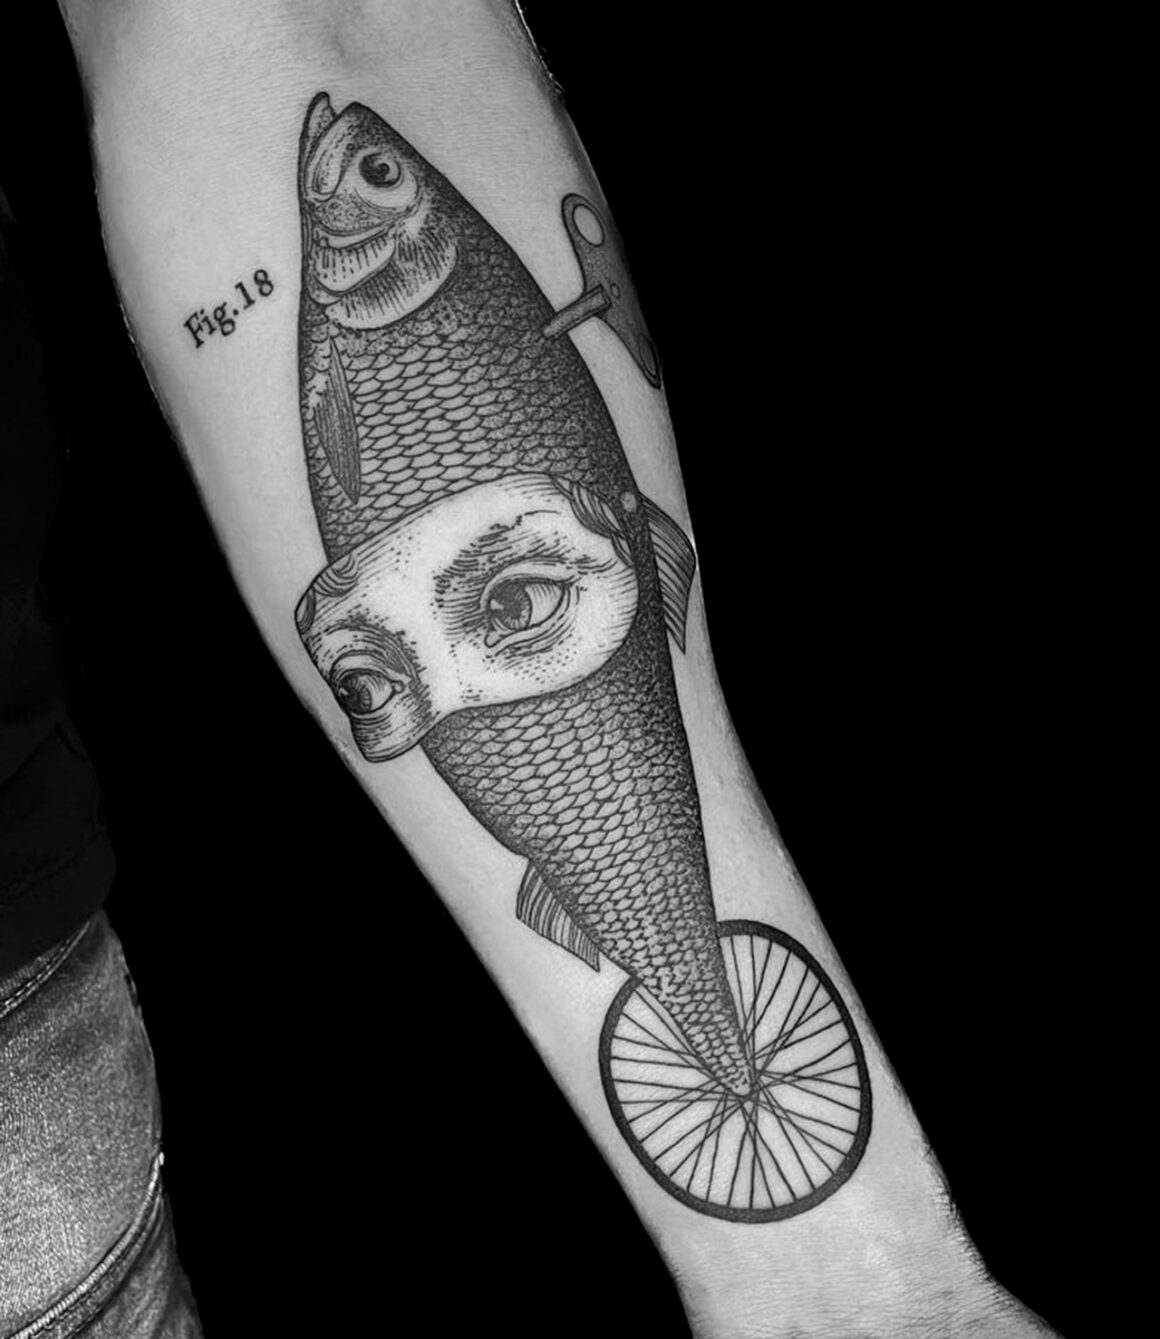 Tattoo by Otto D'Ambra, @otto_dambra